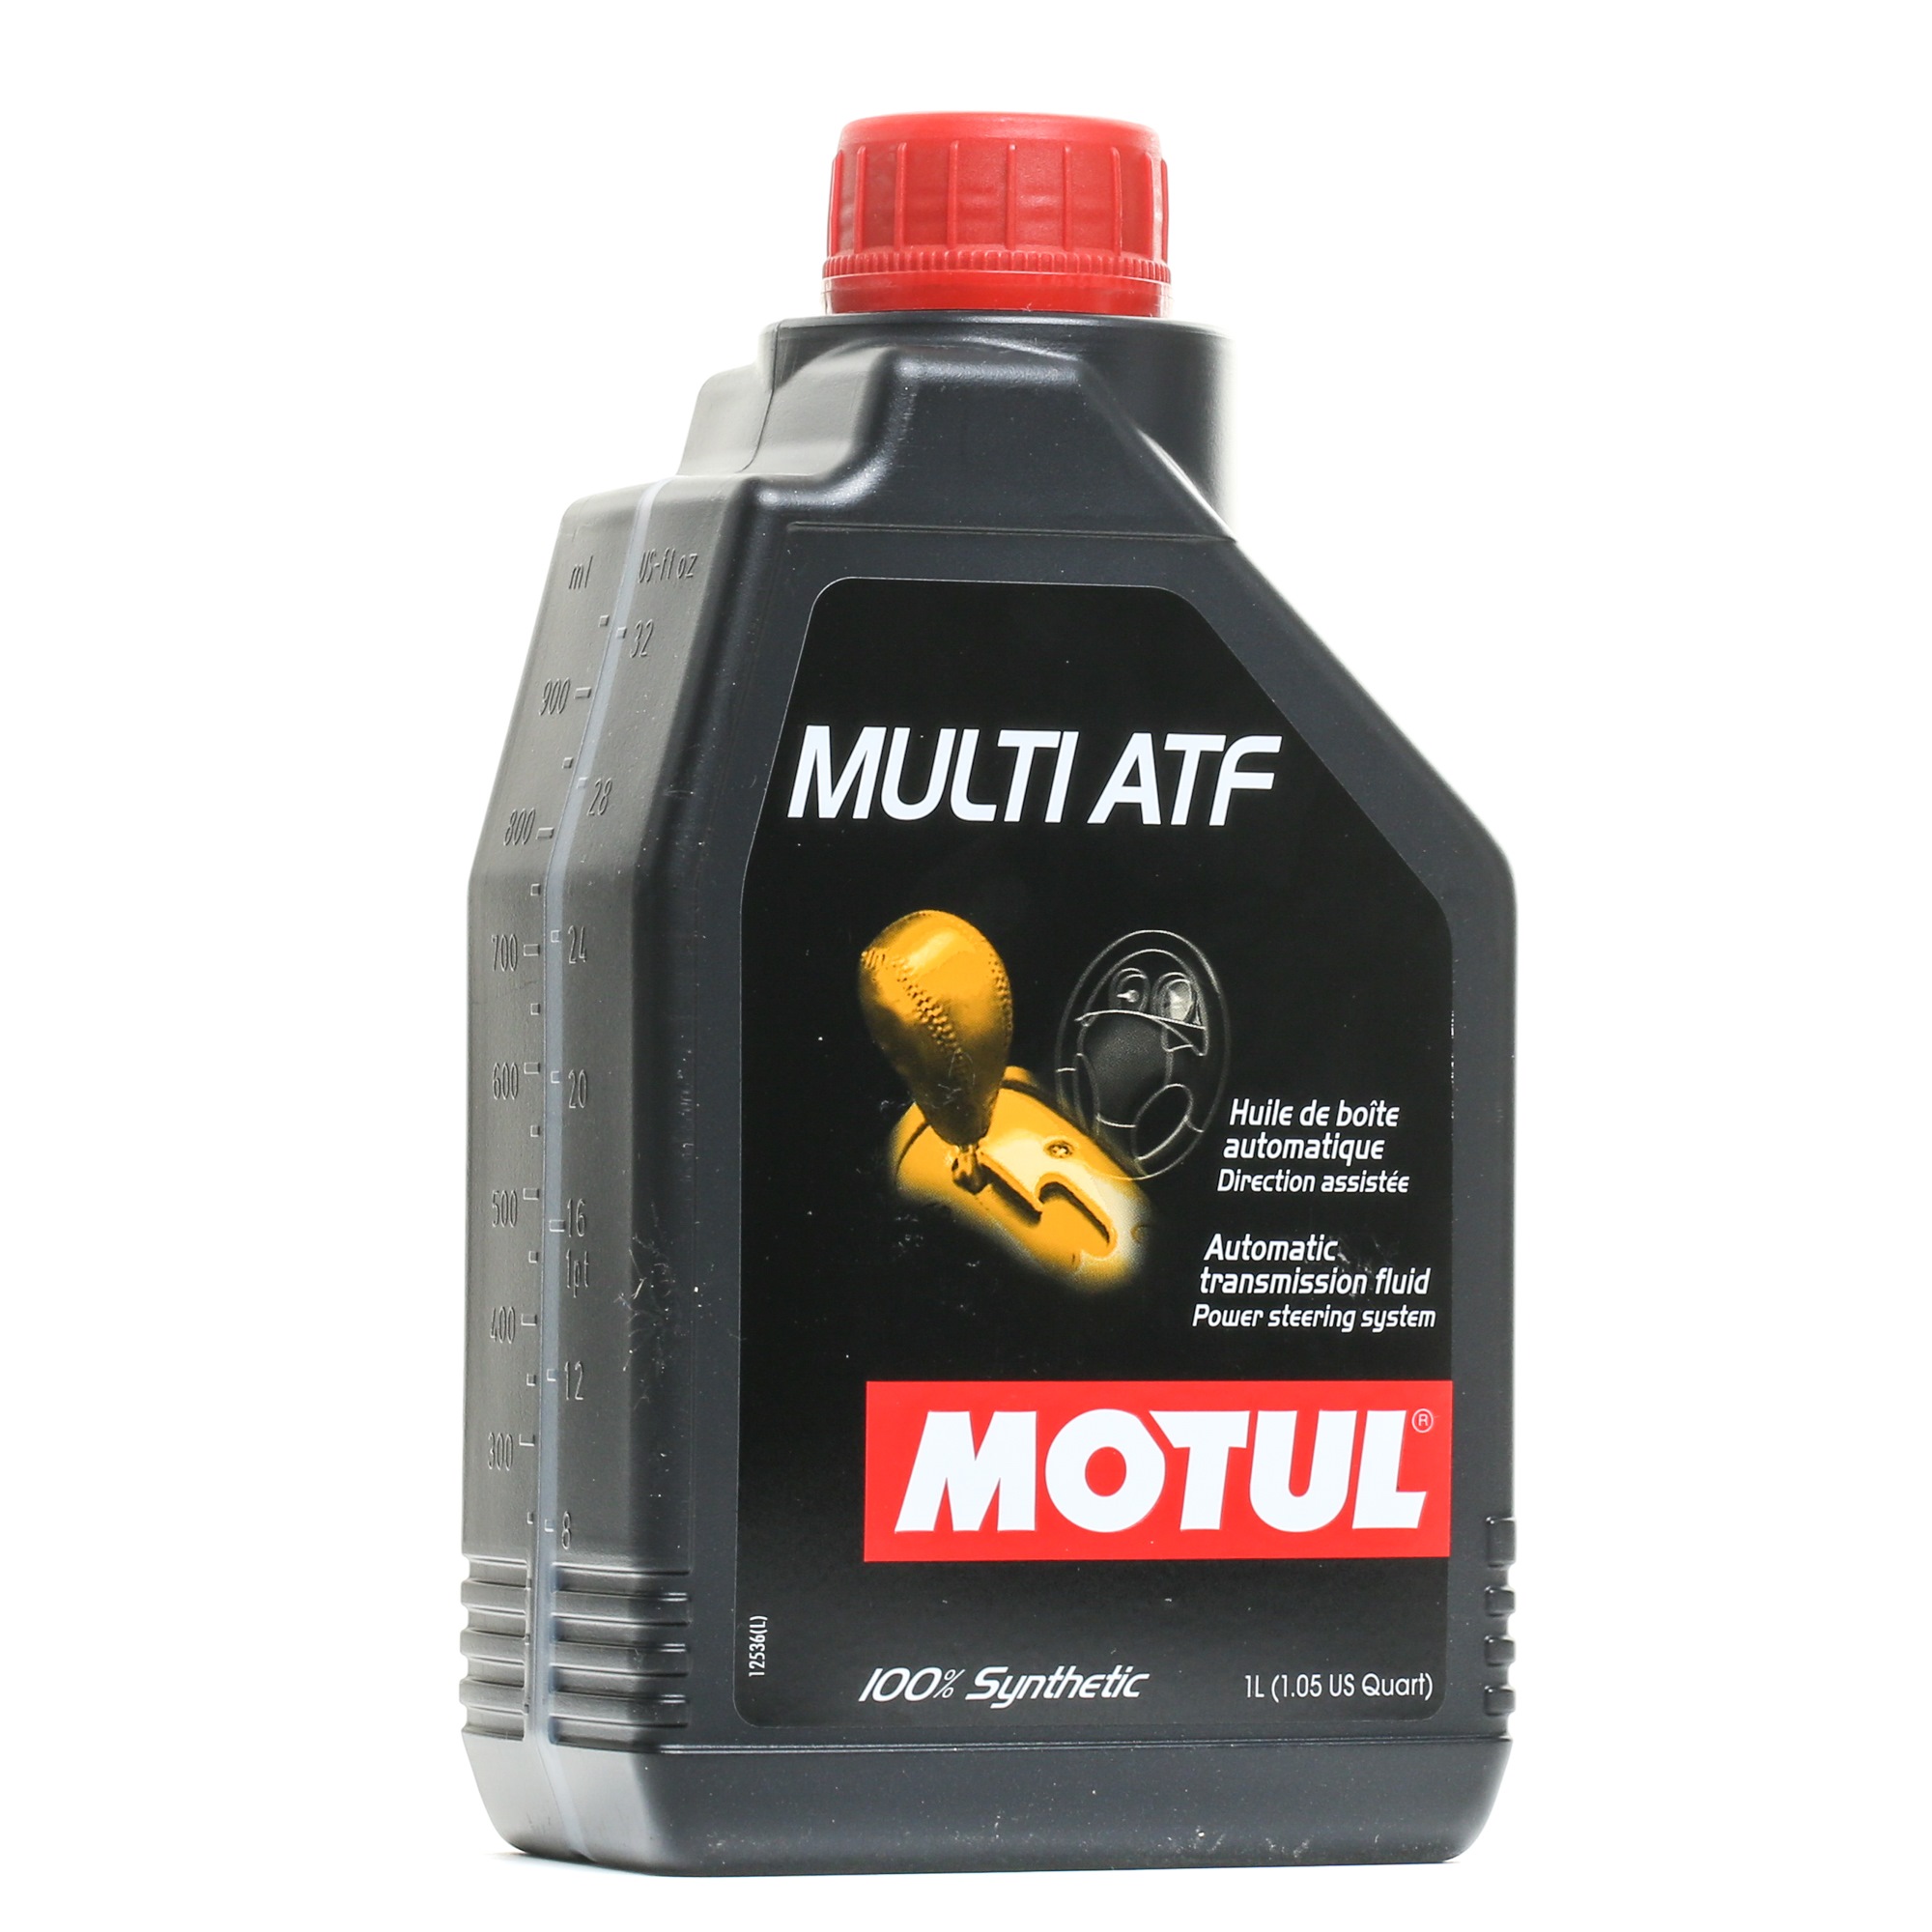 MOTUL MULTI ATF 105784 Automaattivaihteistoöljy